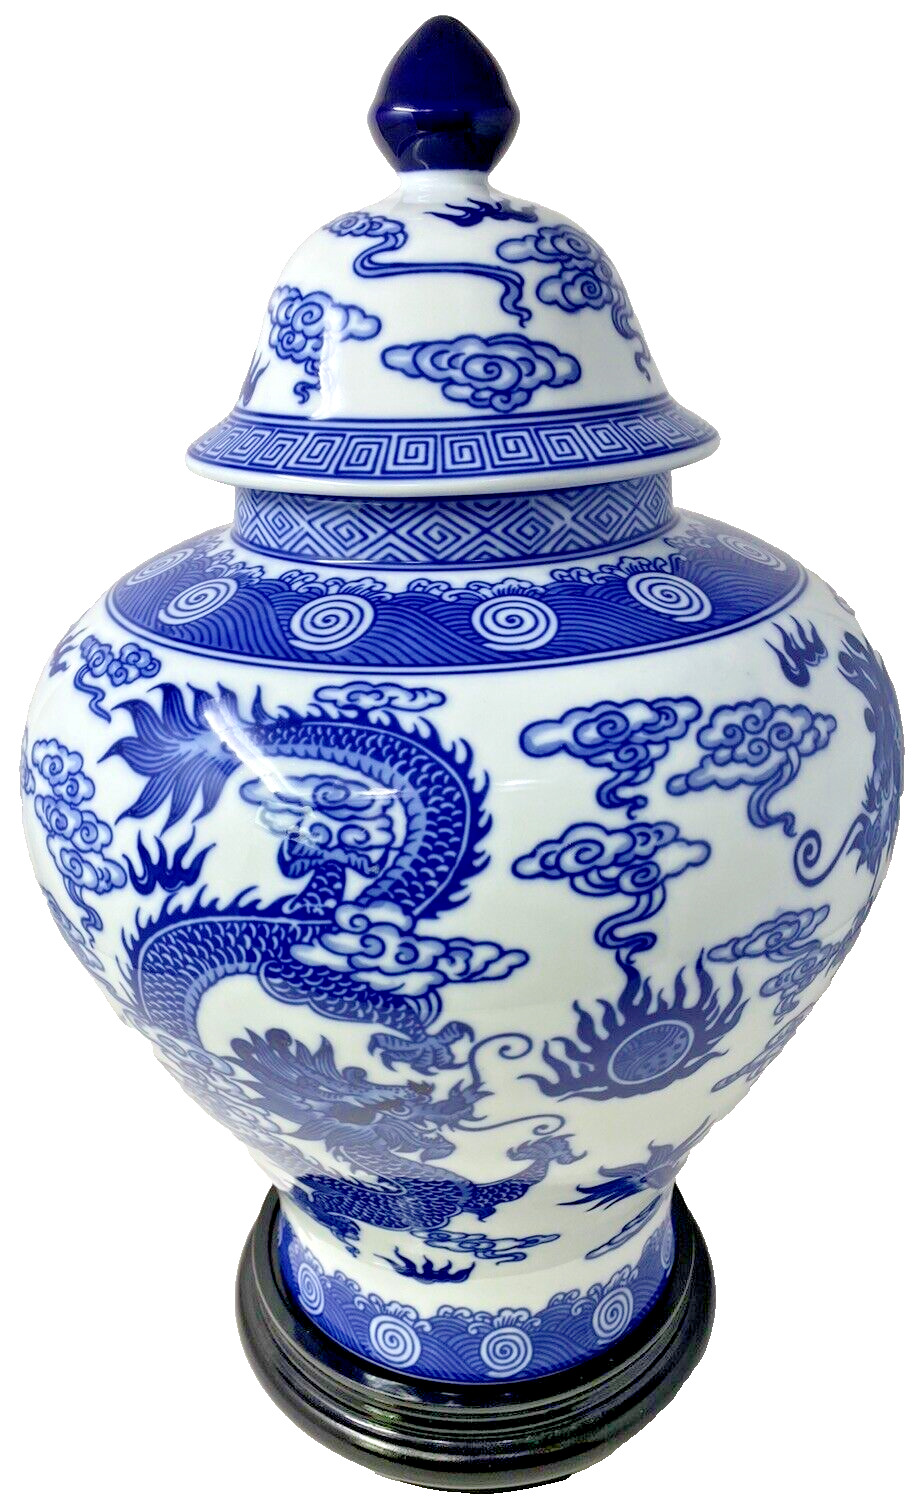 Bombay Company Cobalt Blue & White Vase w/base Porcelain 18x11” Chinese Pottery